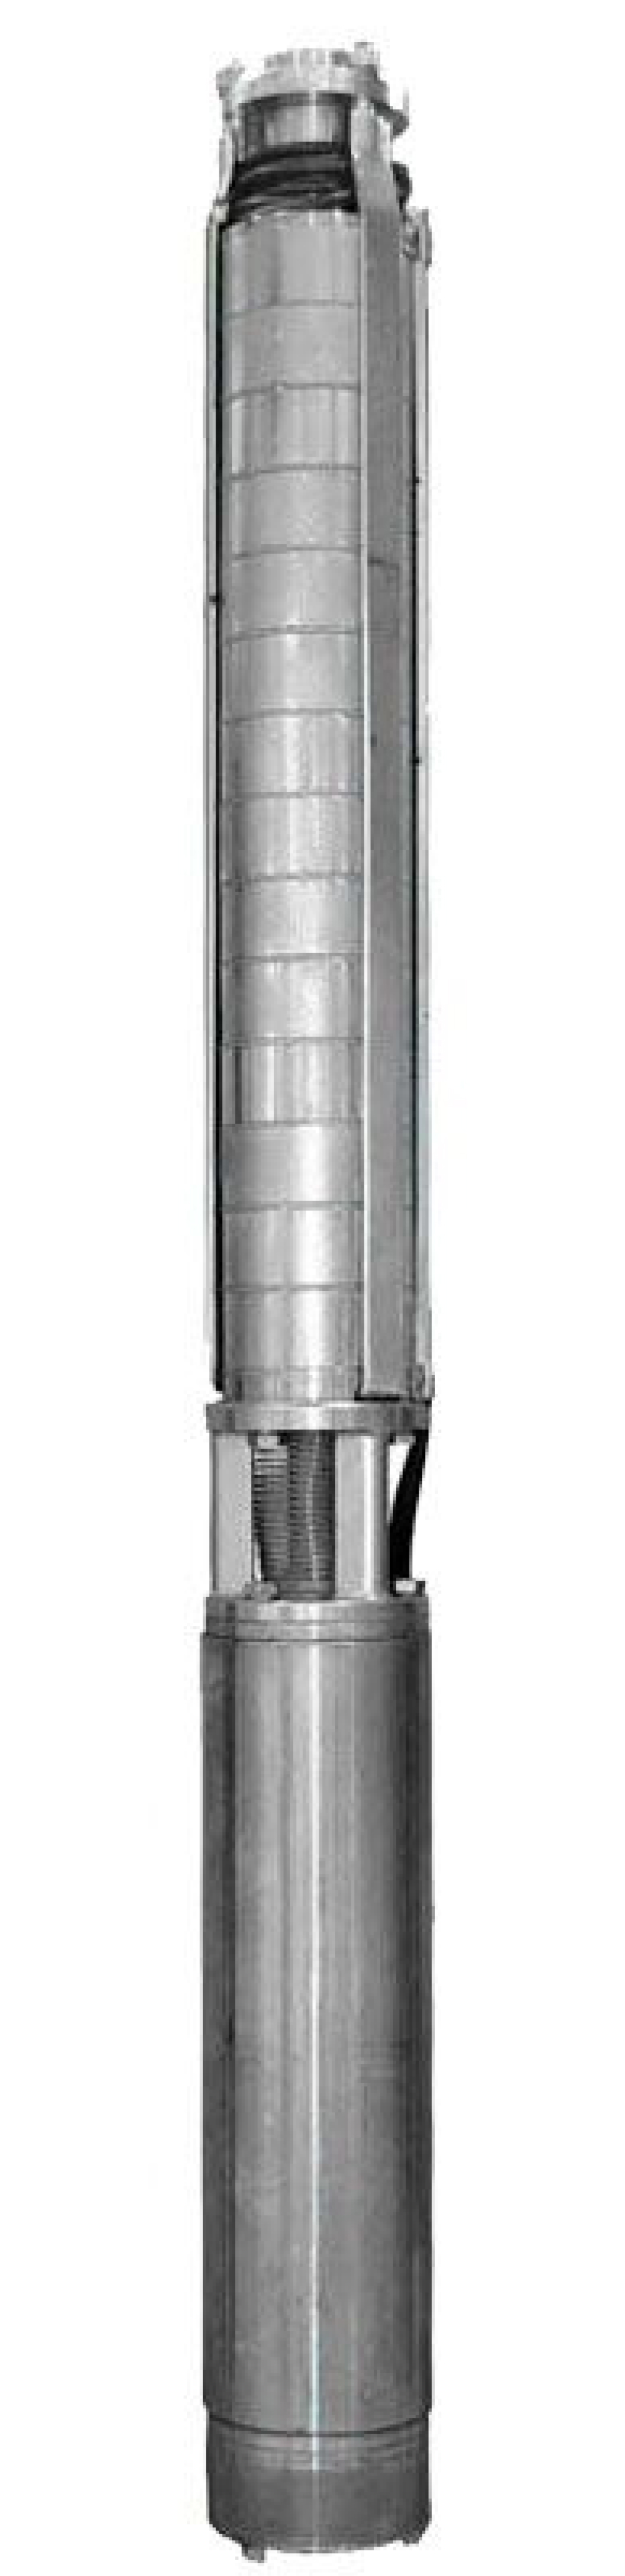 Насос скважинный Ливнынасос ЭЦВ 4-6.5-115 центробежный, производительность 6.5 м3/час, напор 115 м, мощность 4 кВт, напряжение трехфазной сети 380В